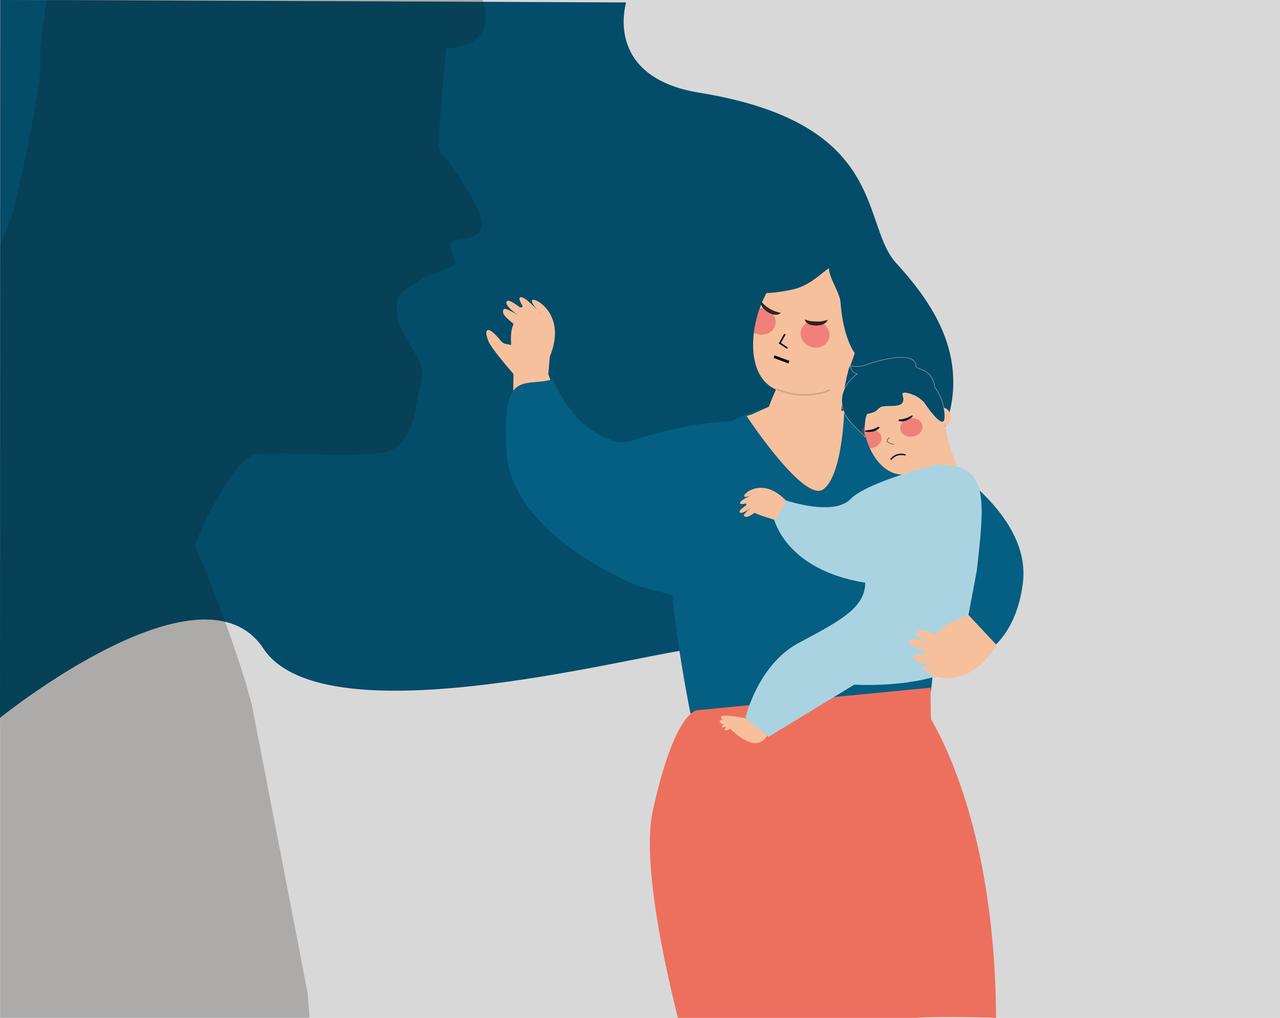 Illustration einer Frau, die ein Kind auf dem Arm hält und es vor einer Person, die sie anschreit, schützt